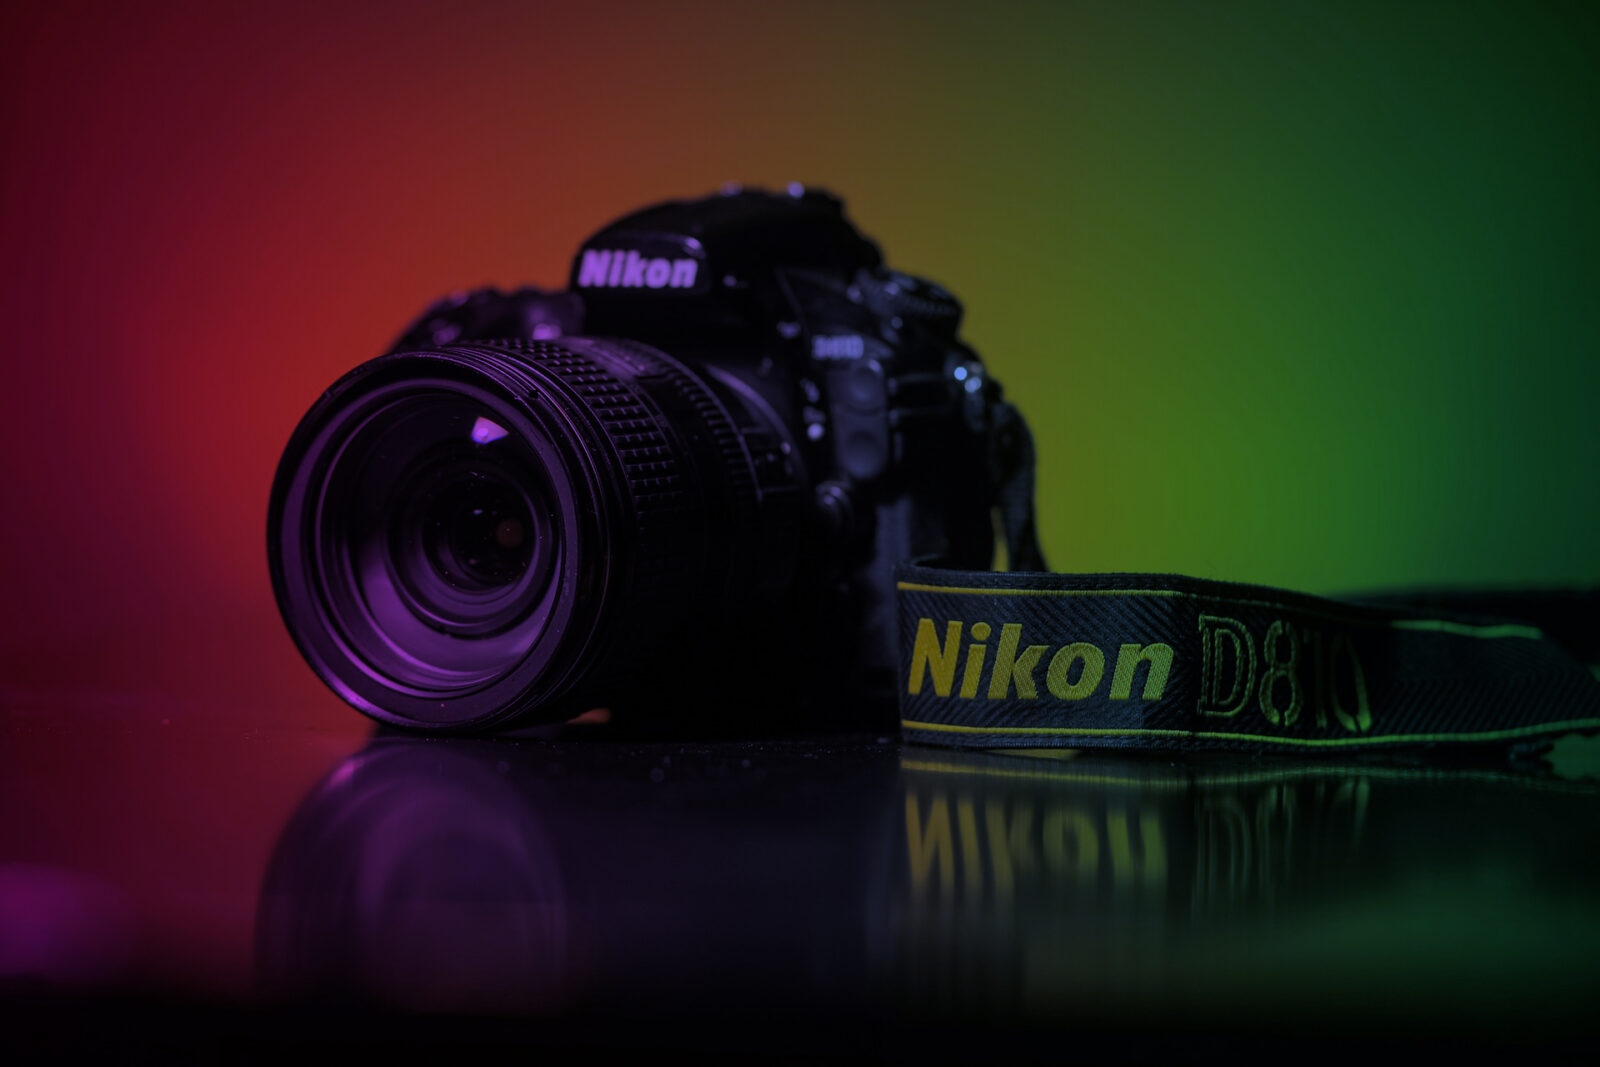 Nikon camera photo gallery download